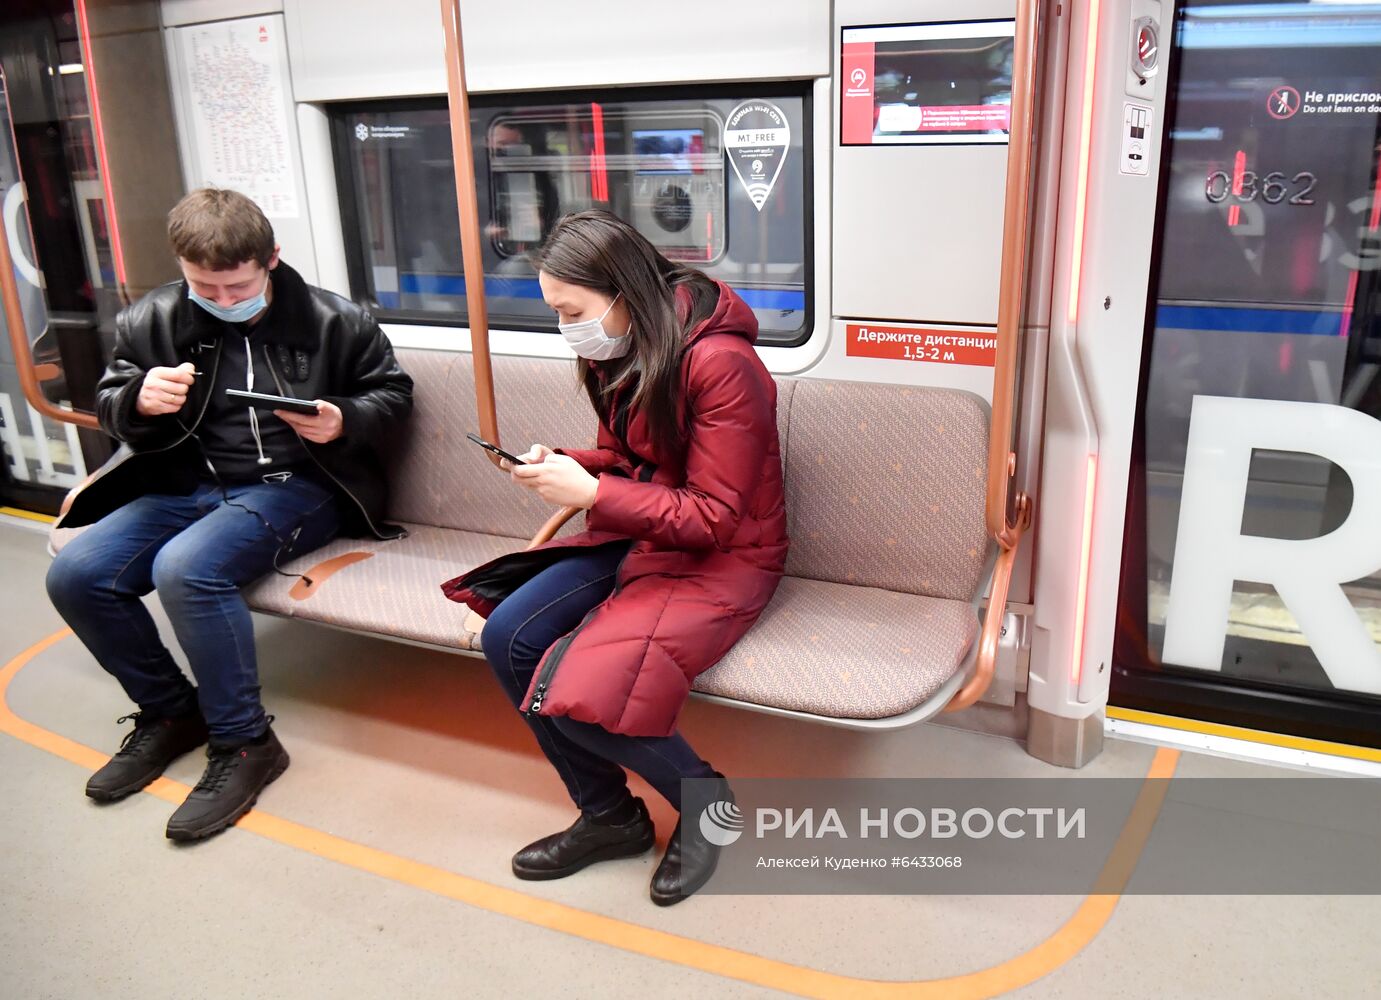 Поезд нового поколения "Москва-2020"